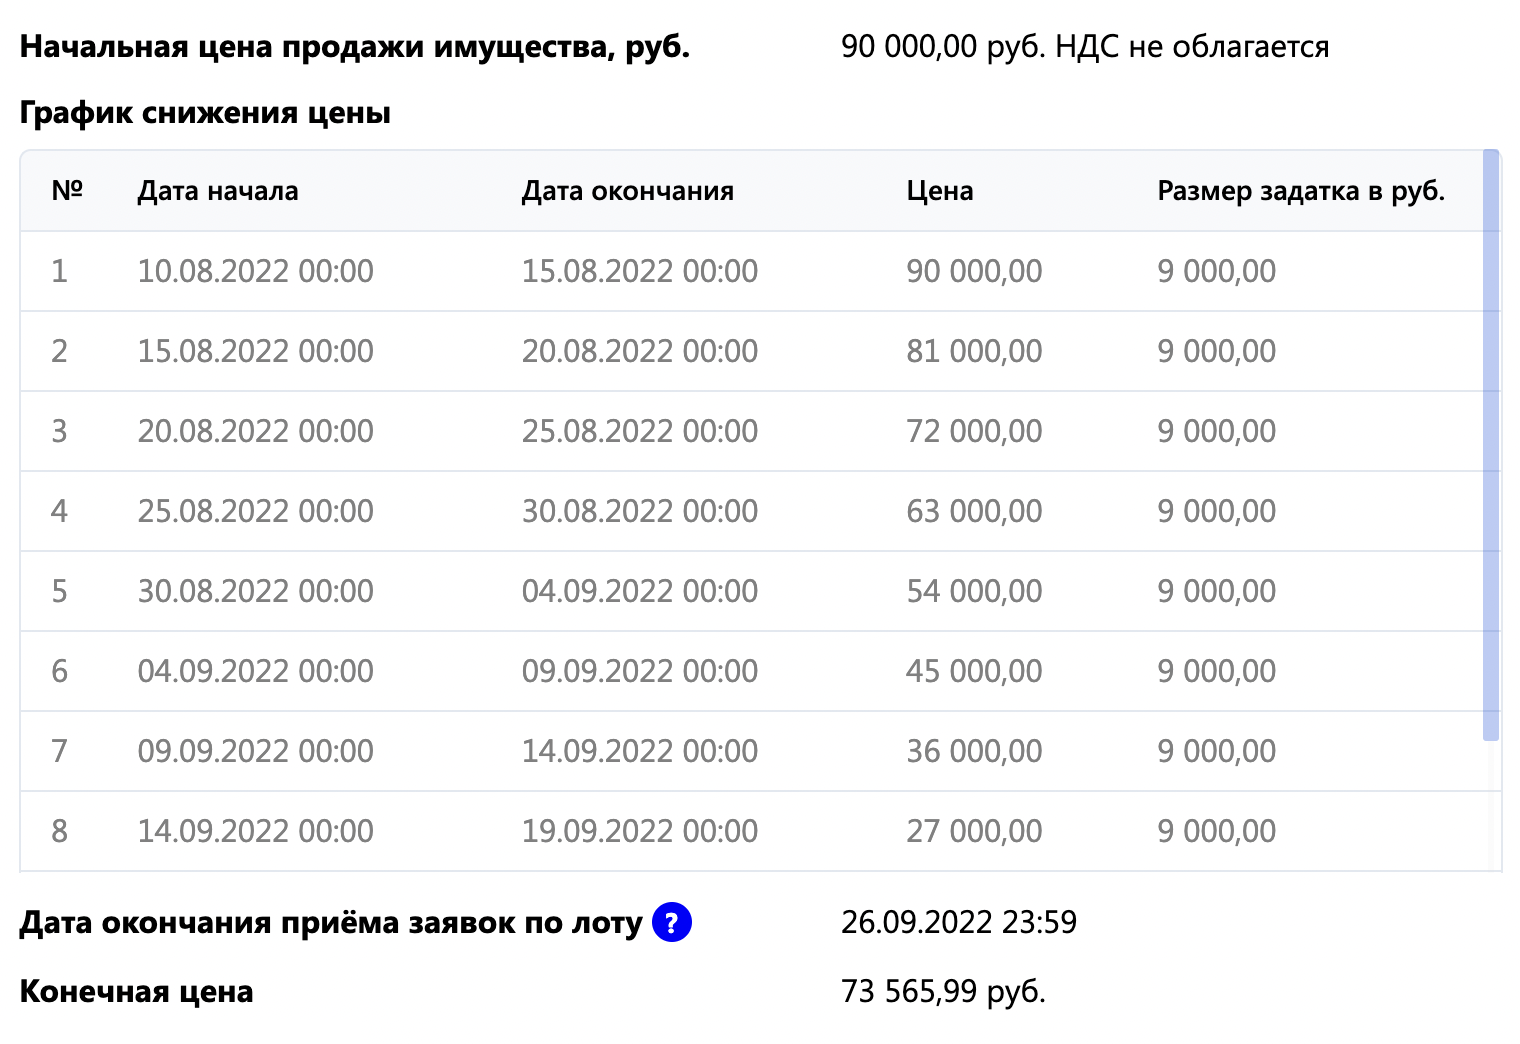 Вот эти торги. Вместо пятого периода с минимальной ценой 54 000 ₽ я подавала заявку на четвертом этапе с минимальной ценой 63 000 ₽. Источник: m-ets.ru